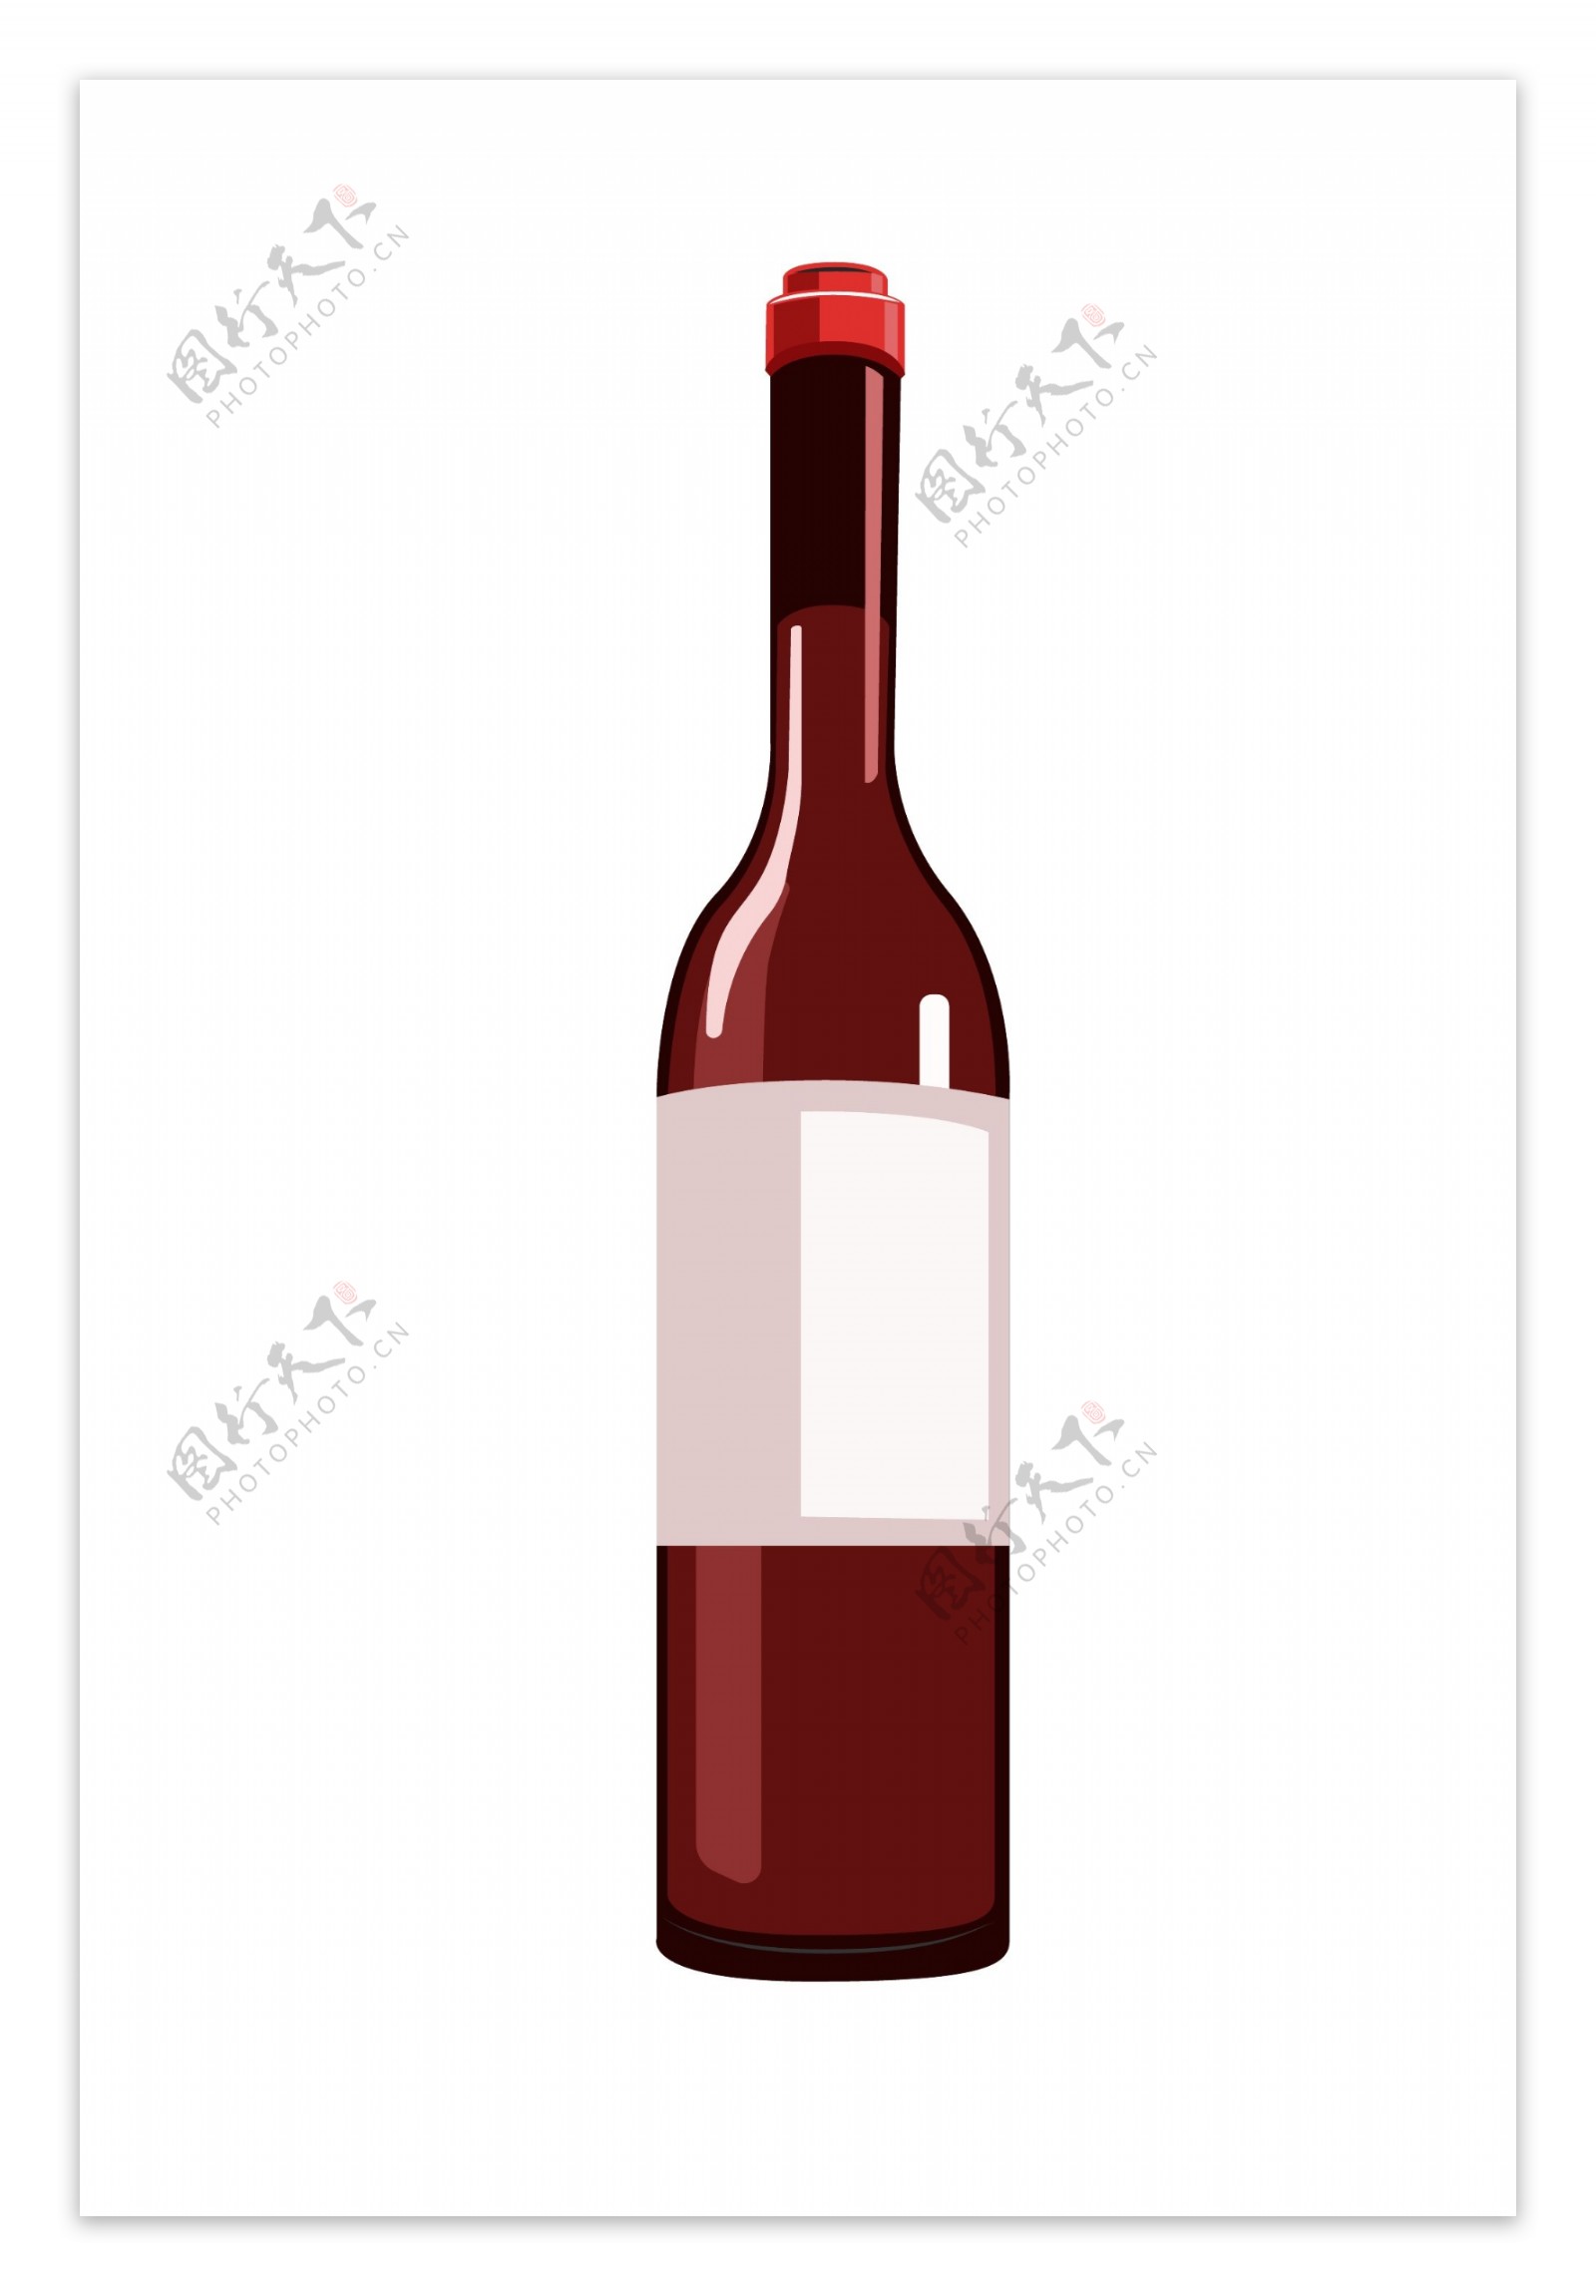 一瓶高档红酒插图